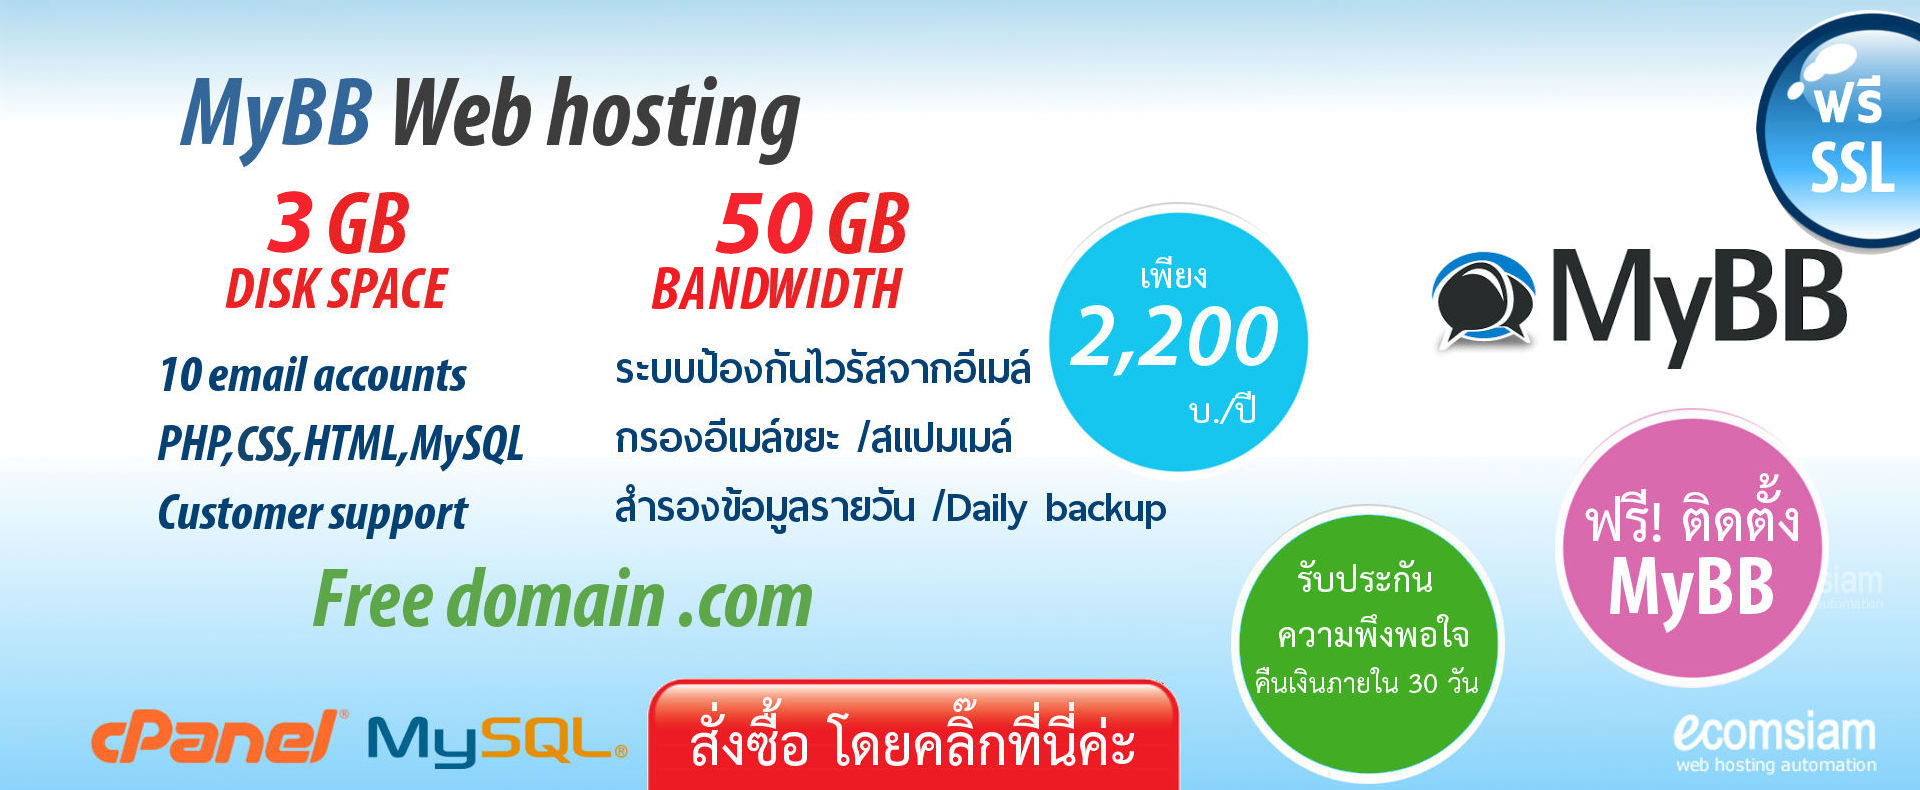 แนะนำ MyBB web hosting thailand เพียง 2,200 บ./ปี เว็บโฮสติ้งไทย ฟรี โดเมน ฟรี SSL ฟรีติดตั้ง แนะนำเว็บโฮสติ้ง บริการลูกค้า  Support ดูแลดี โดย thailandwebhost.com - MyBB web hosting thailand free domain